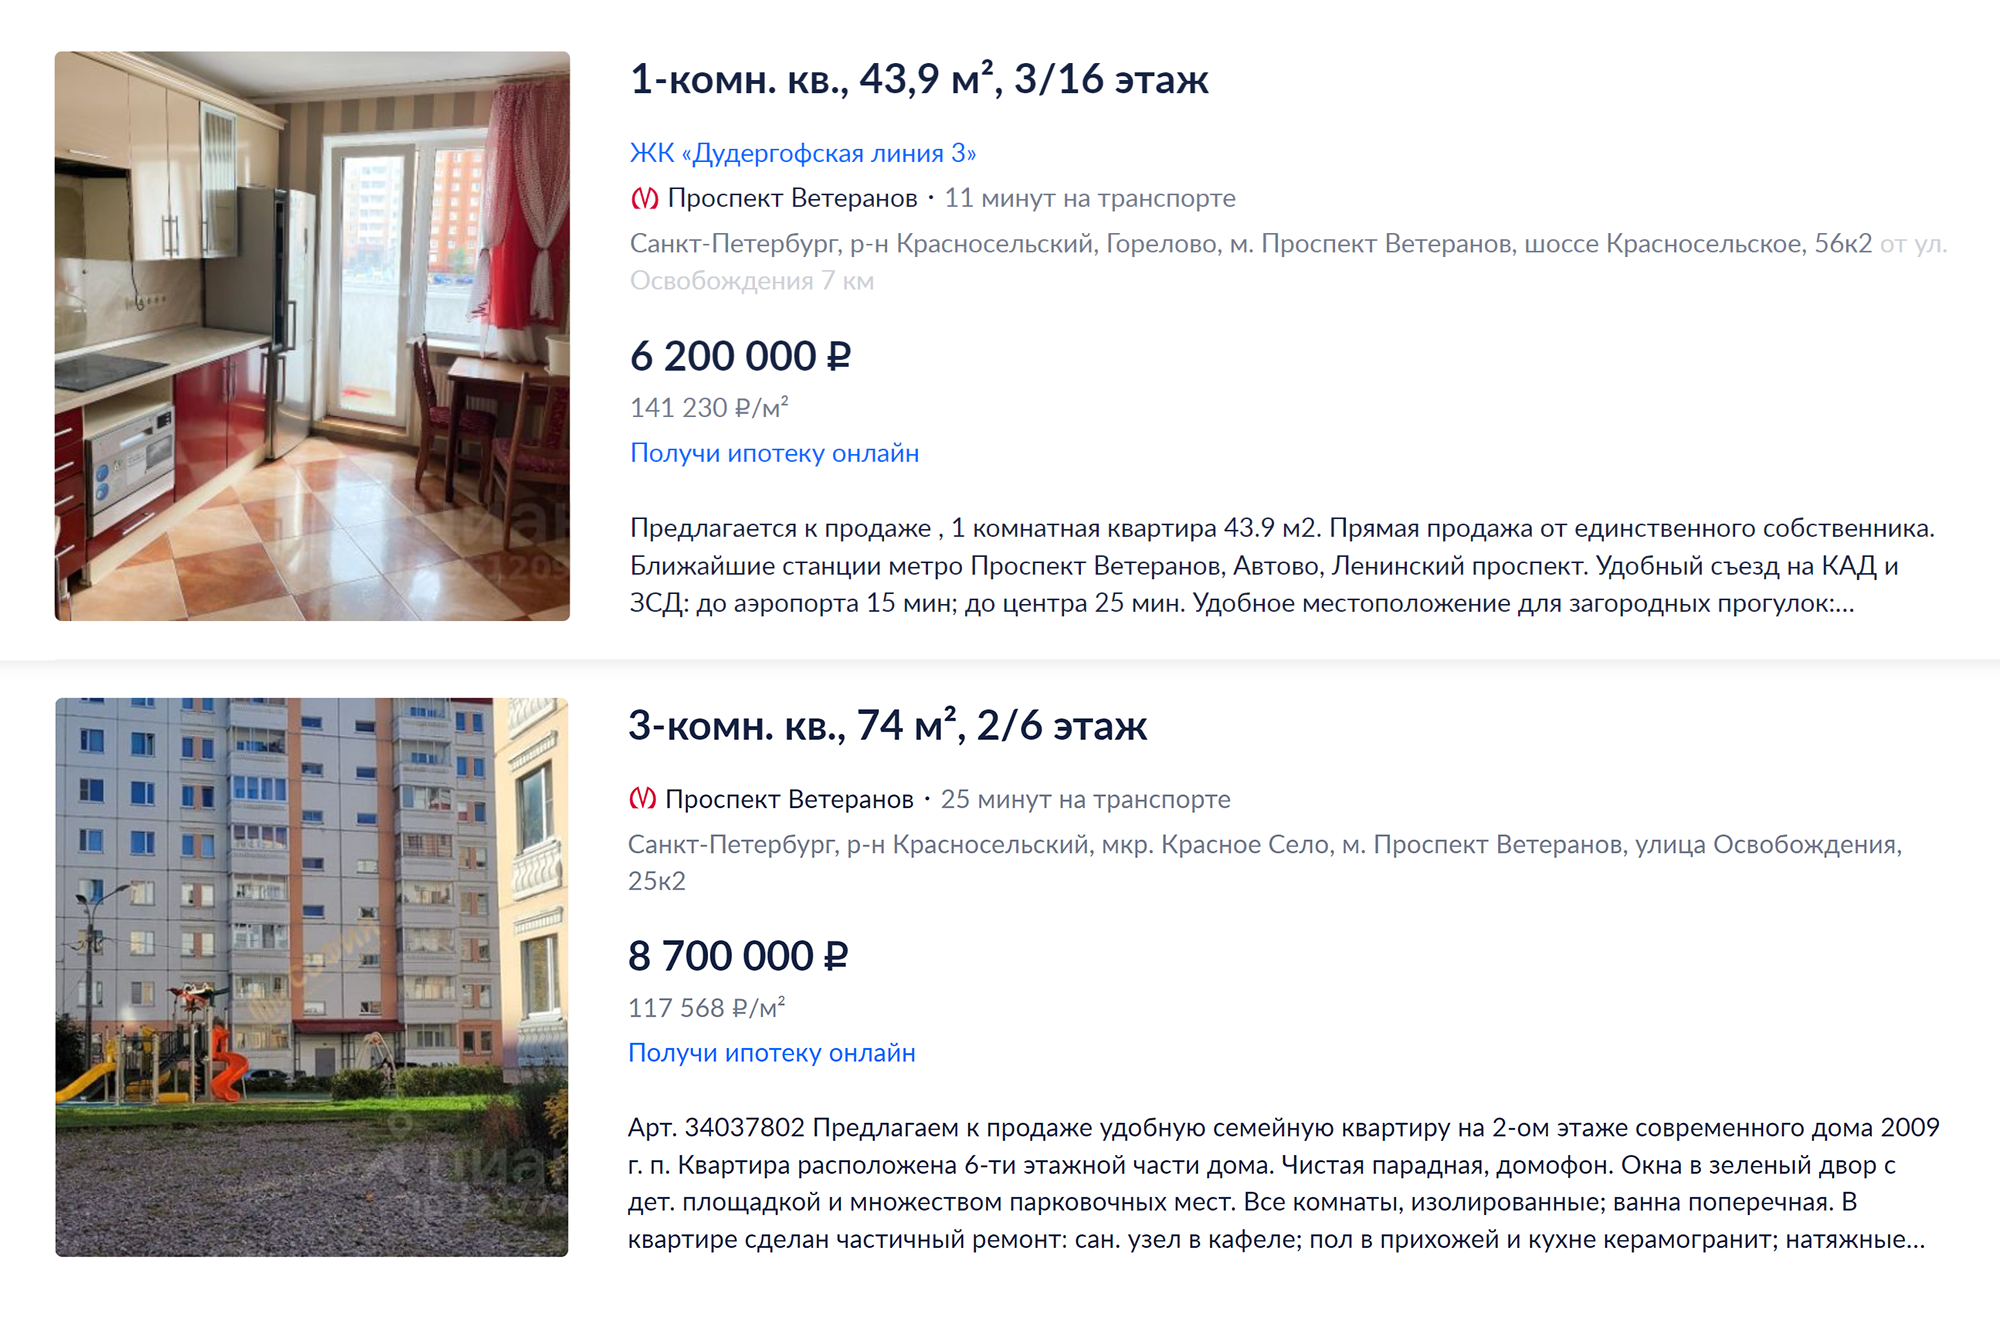 В Красном Селе порой кажется, что выгоднее купить квартиру большей площади. Источник: cian.ru